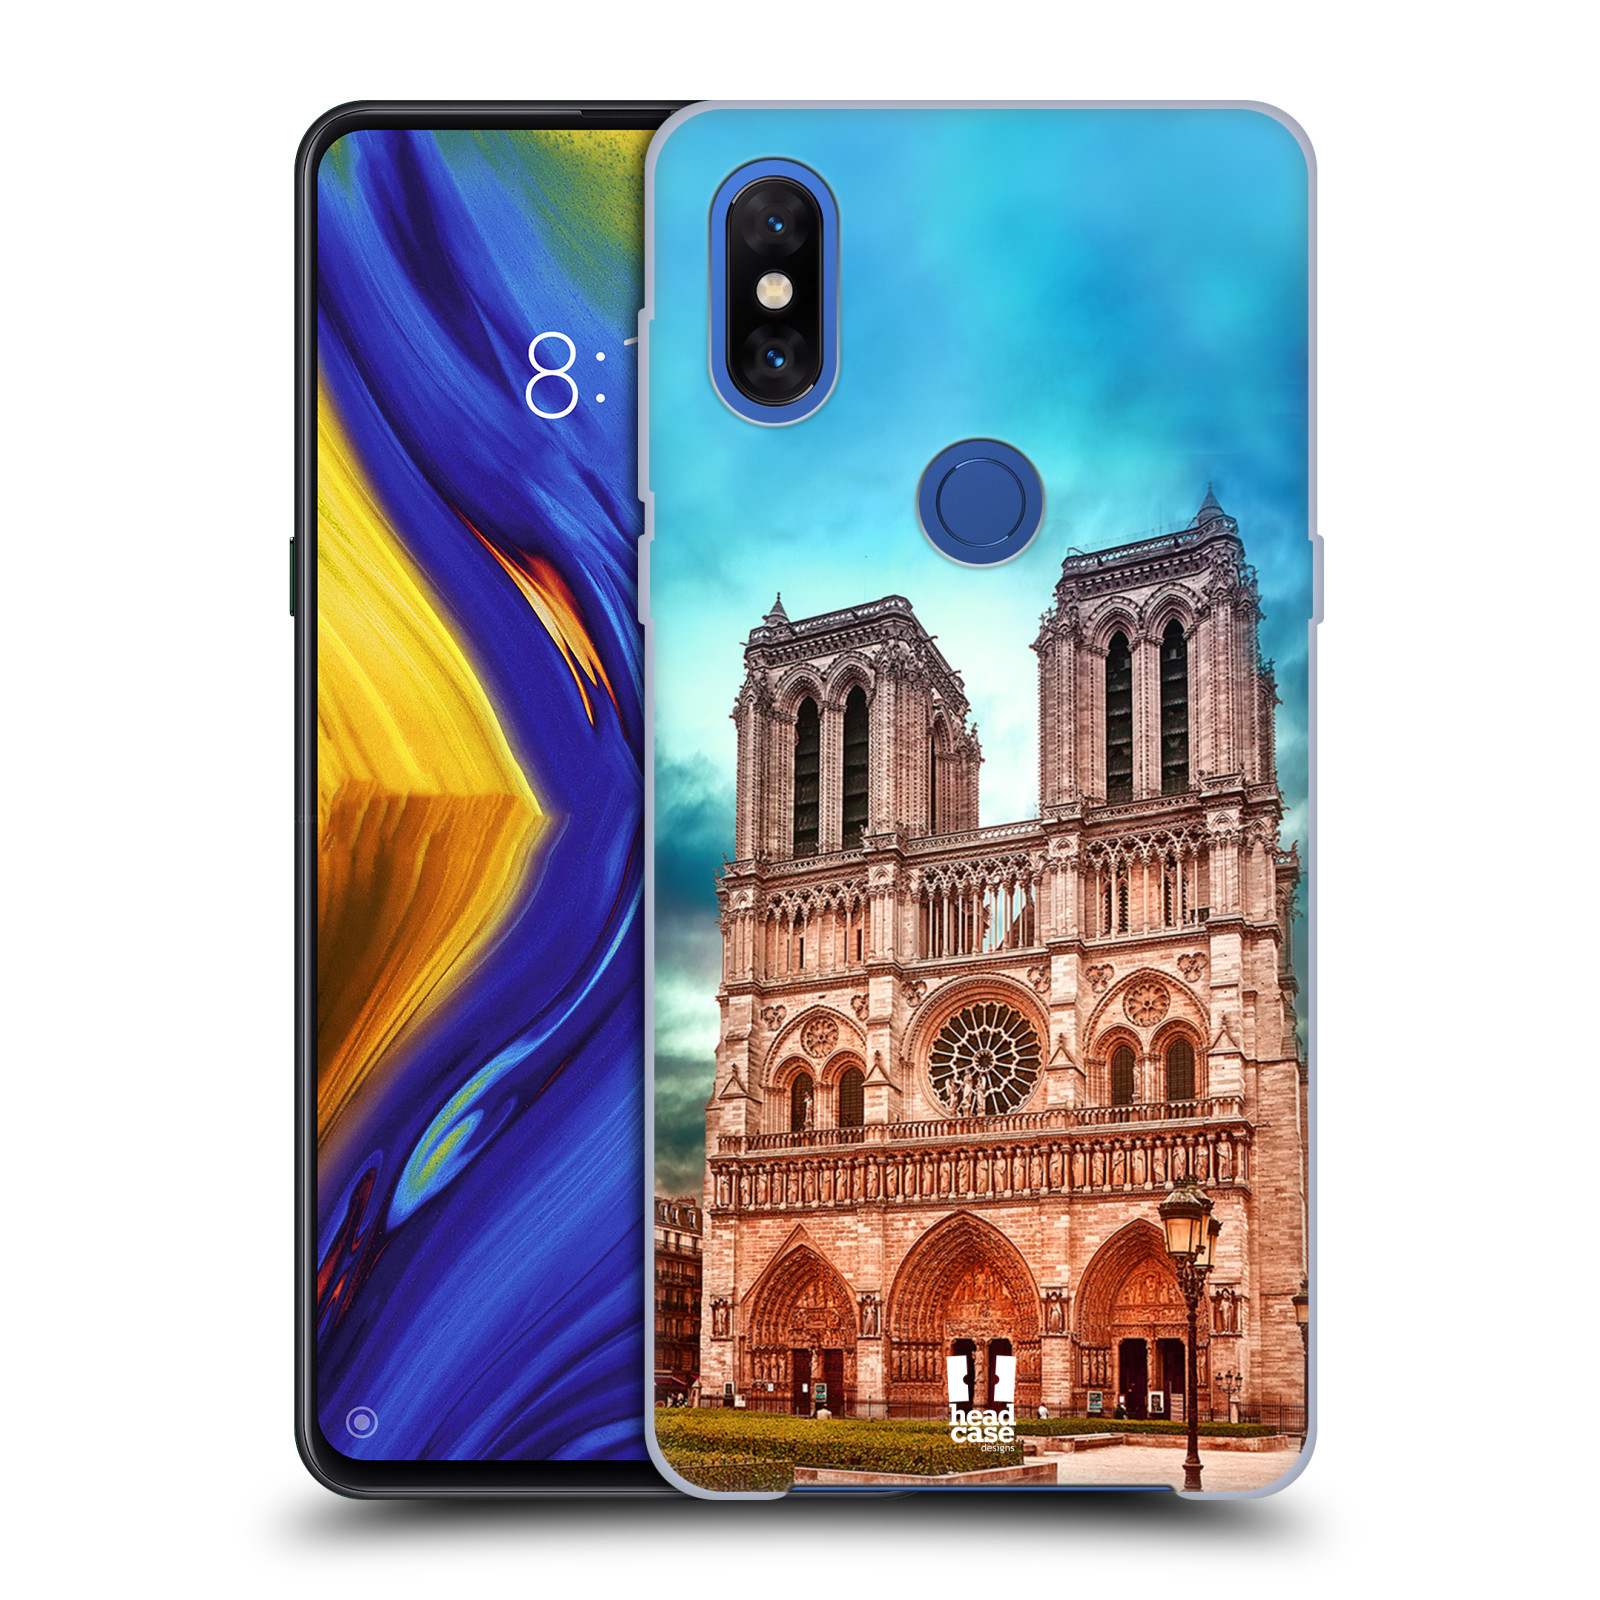 Pouzdro na mobil Xiaomi Mi Mix 3 - HEAD CASE - historická místa katedrála Notre Dame